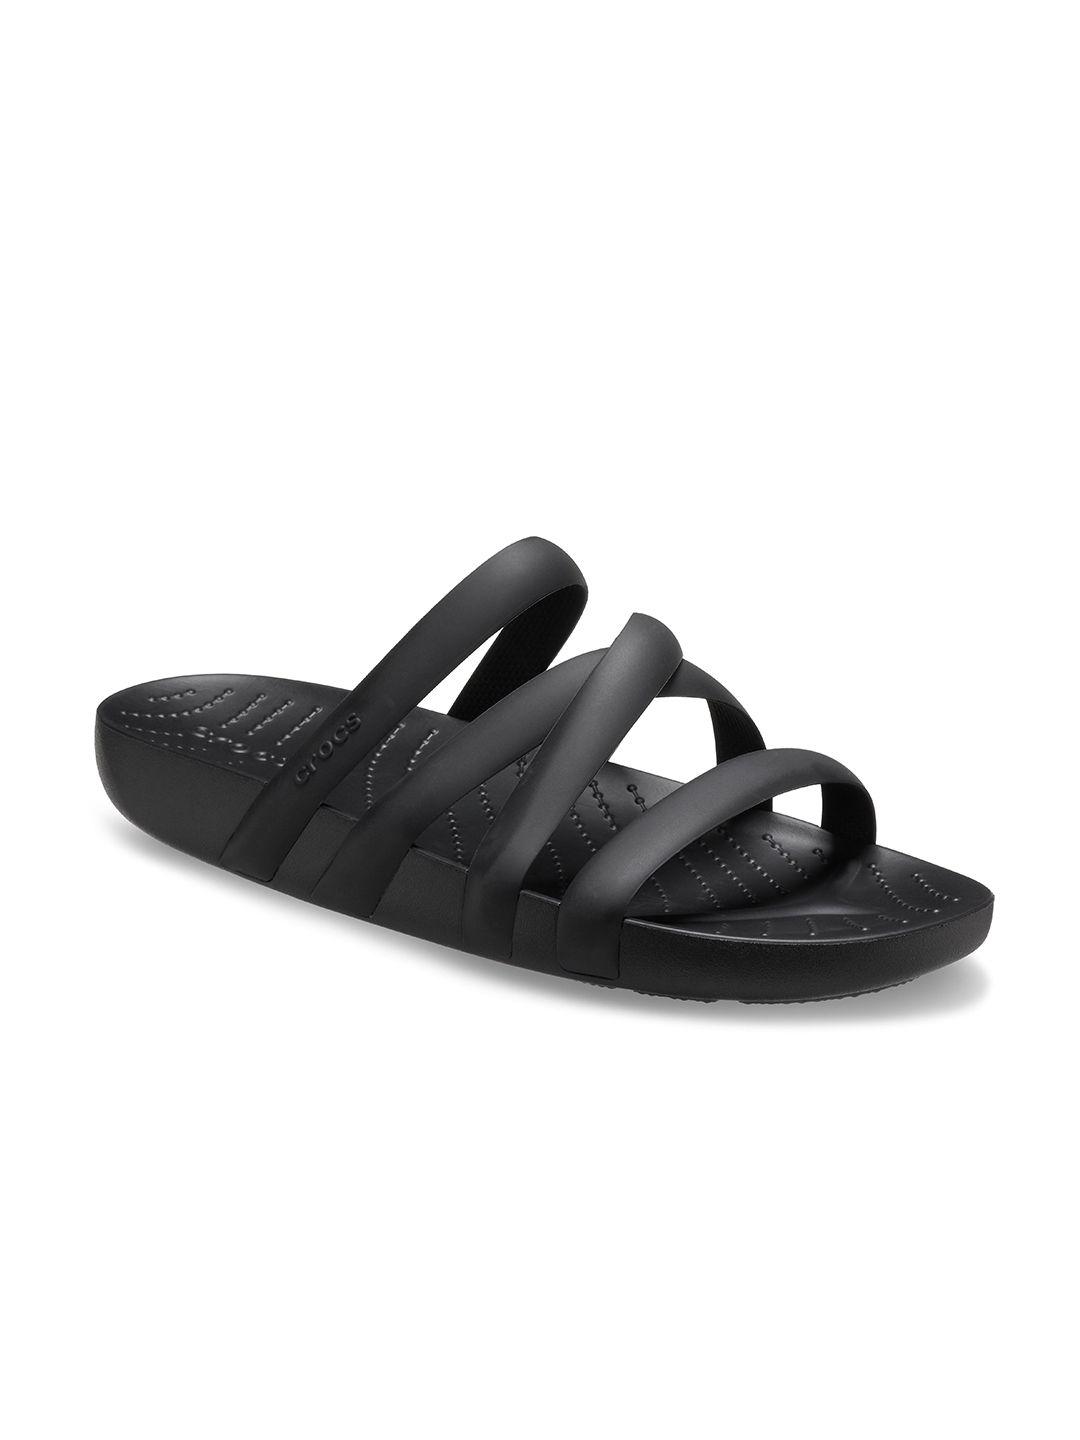 crocs women black comfort sandals